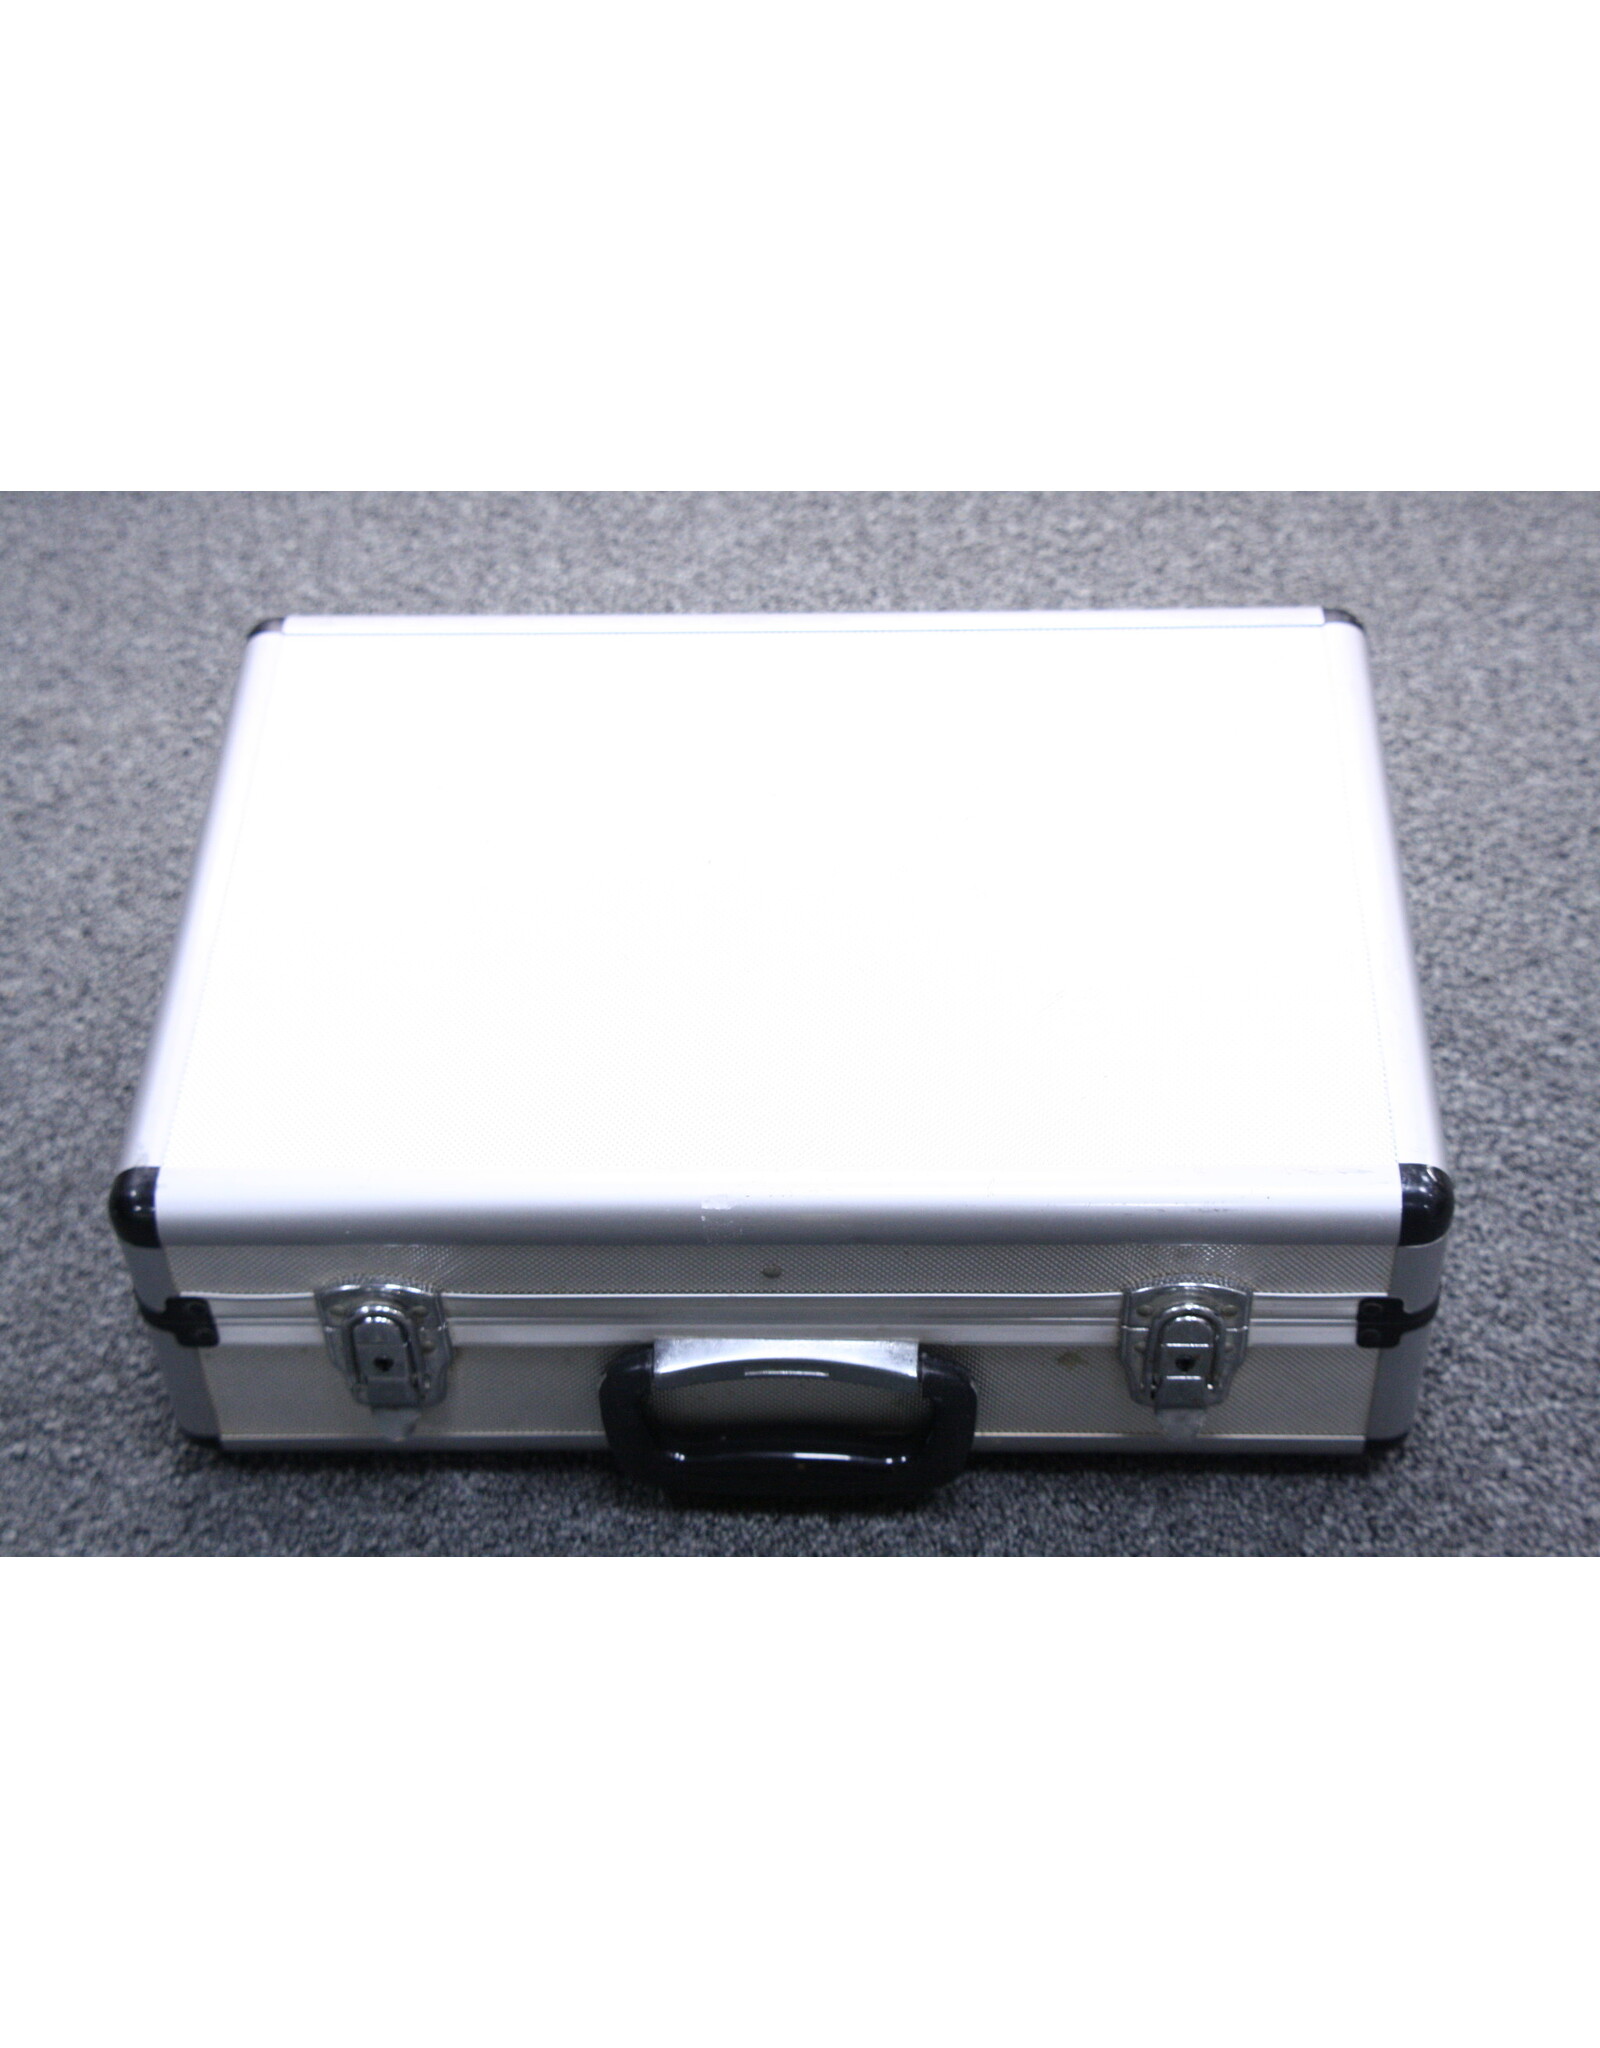 Aluminum Hard 17 x 12"  Attache Case with foam